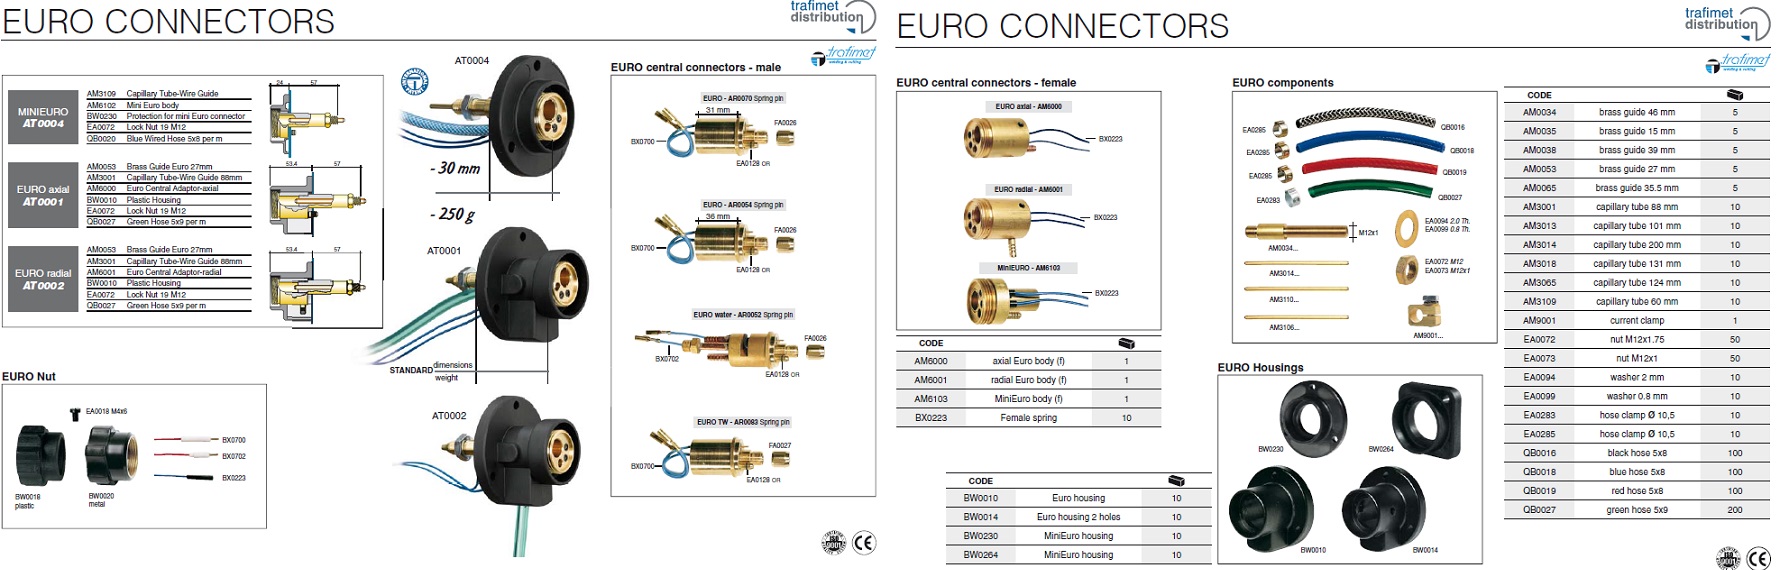 EURO CONNECTORS